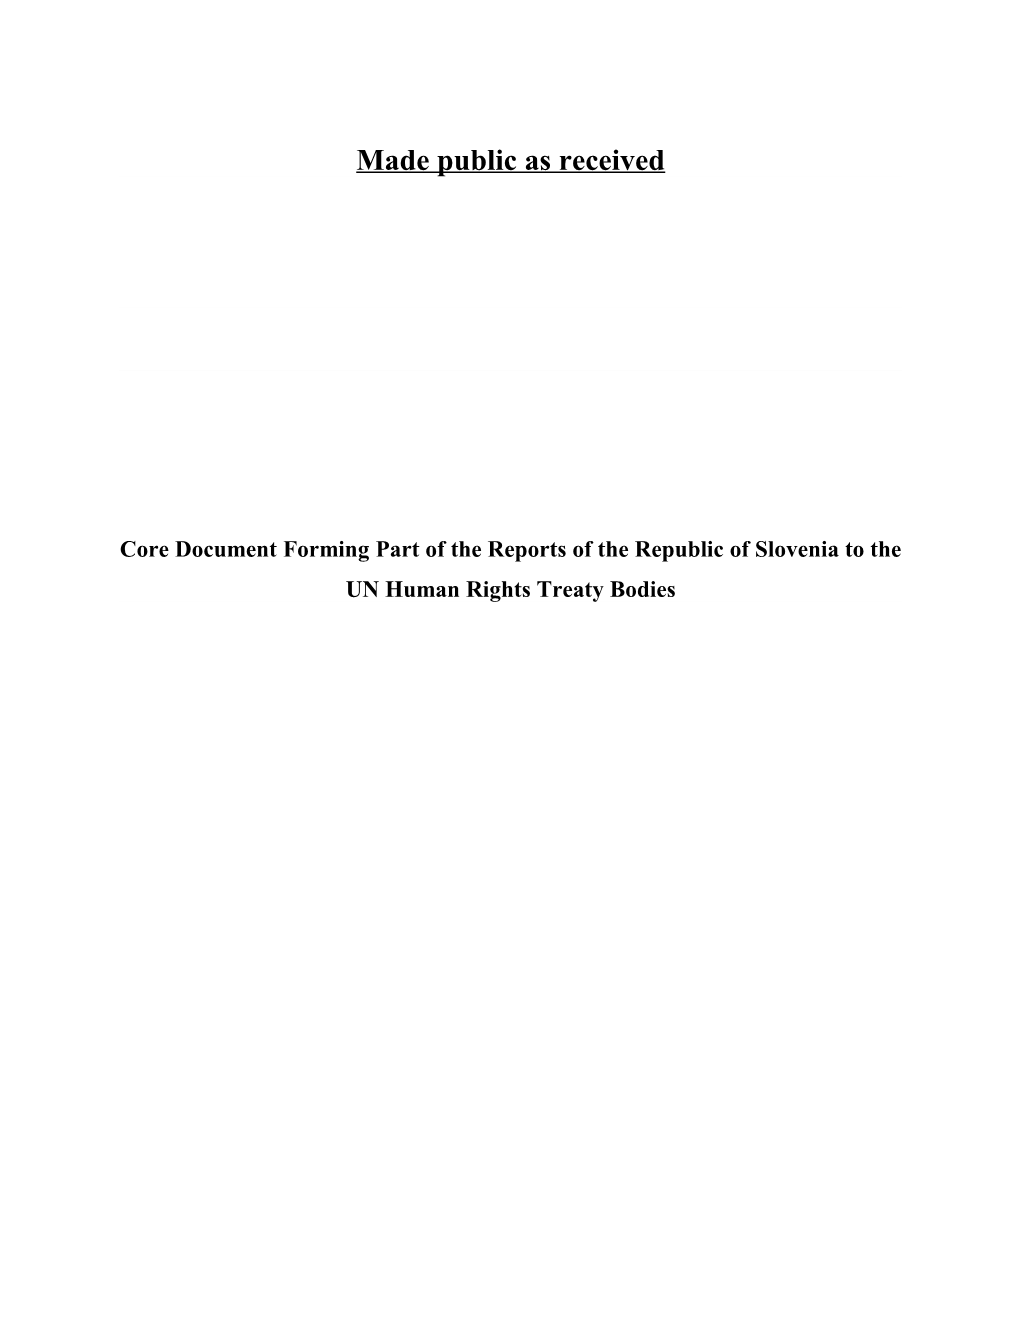 Predstavitveni Dokument, Ki Je Del Poročil Republike Slovenije Pogodbenim Telesom Združenih